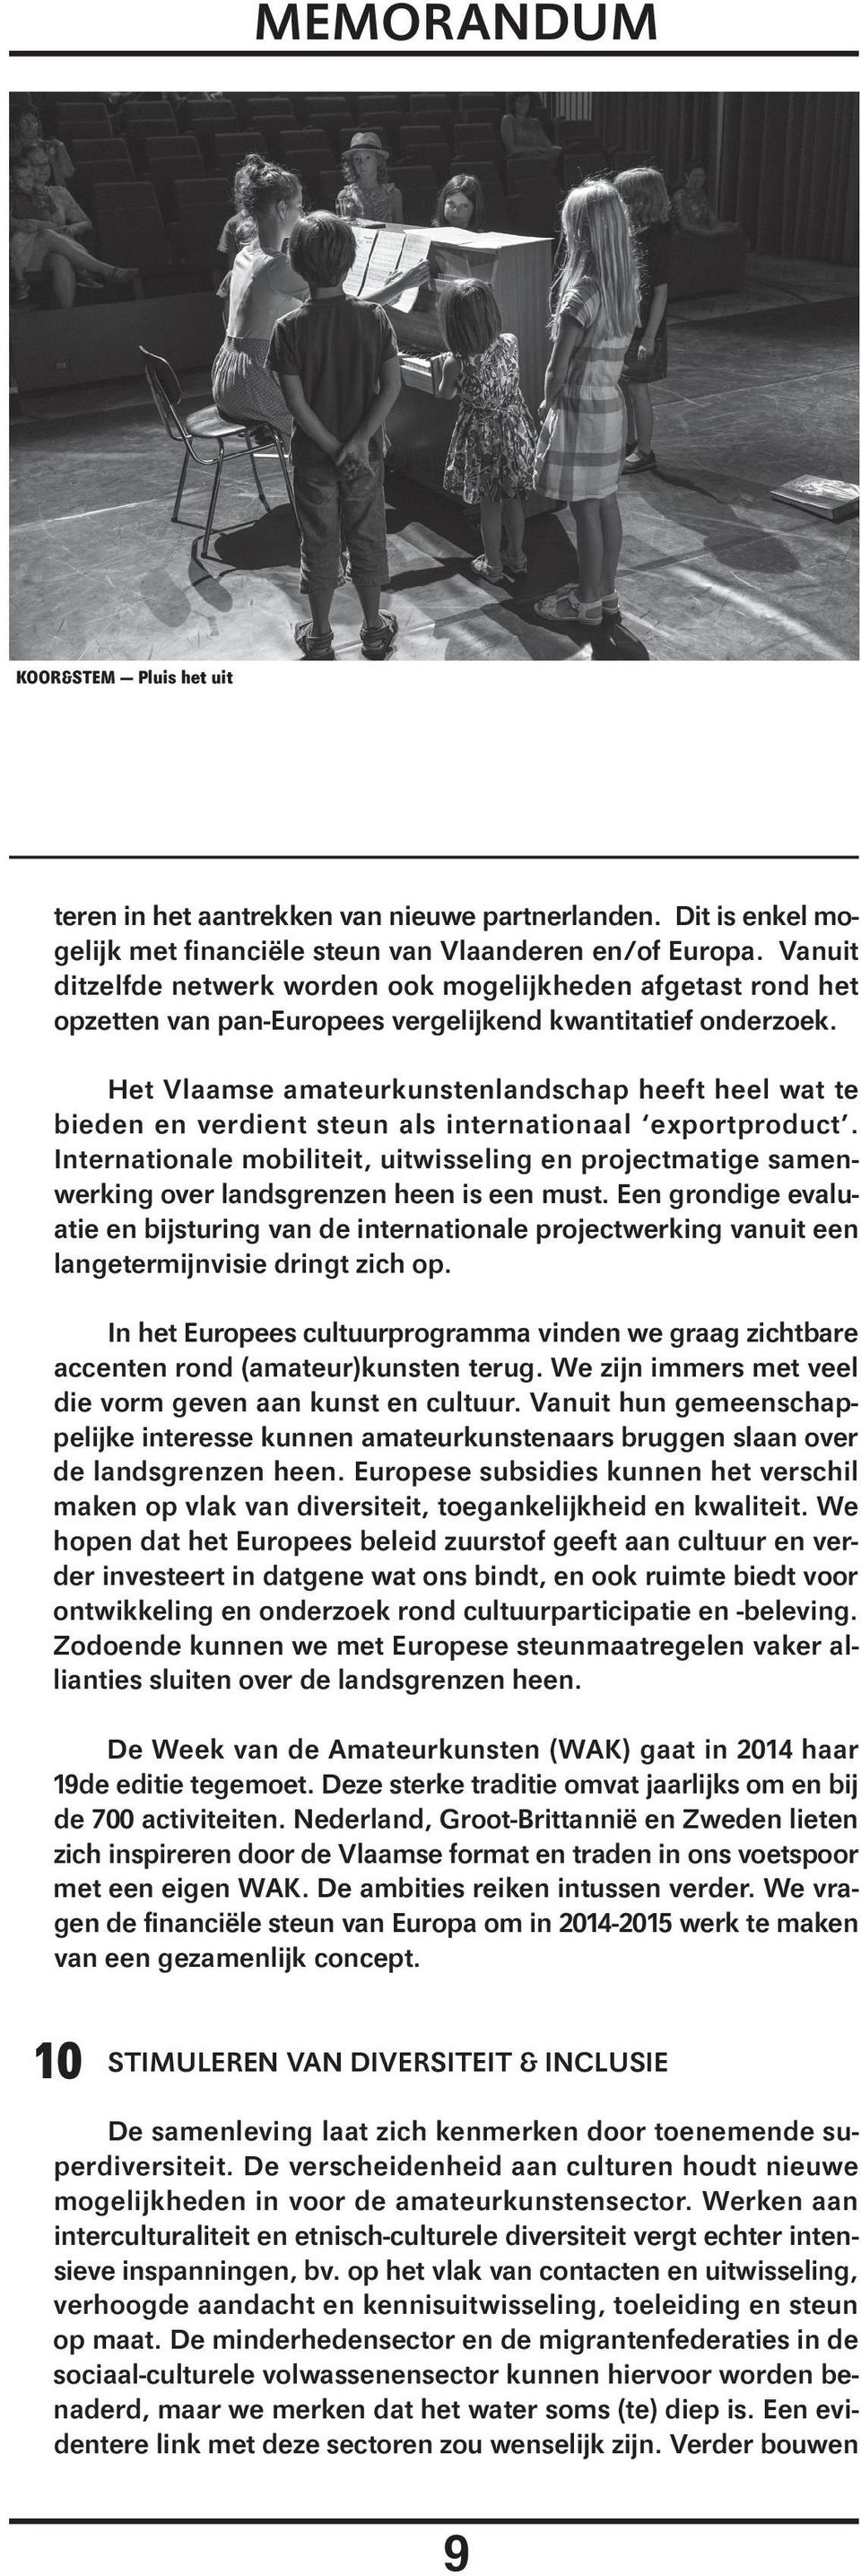 Het Vlaamse amateurkunstenlandschap heeft heel wat te bieden en verdient steun als internationaal exportproduct.